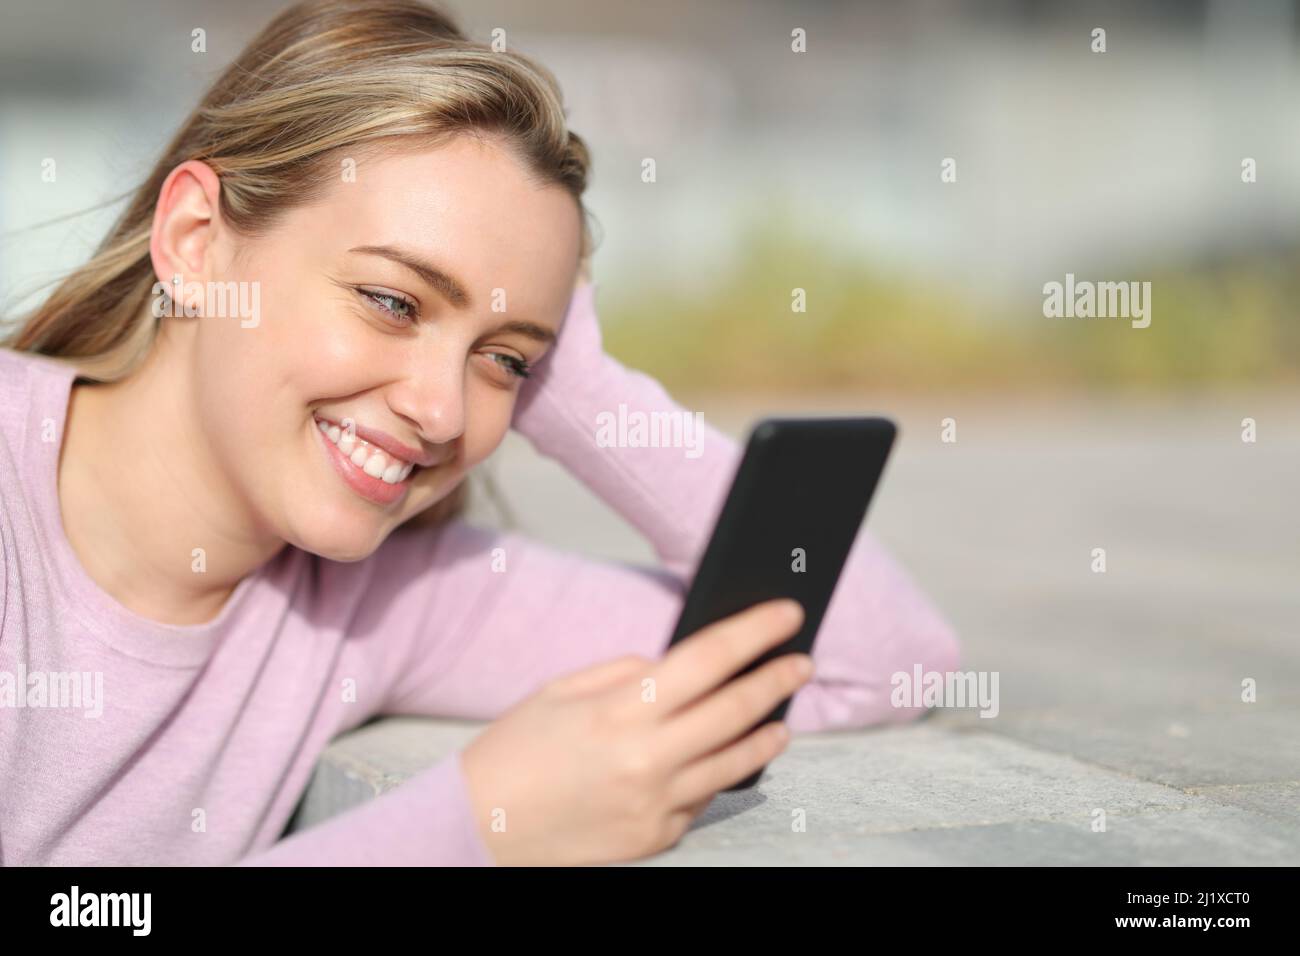 Fröhlicher Teenager, der auf der Straße mit einem Smartphone lächelt Stockfoto